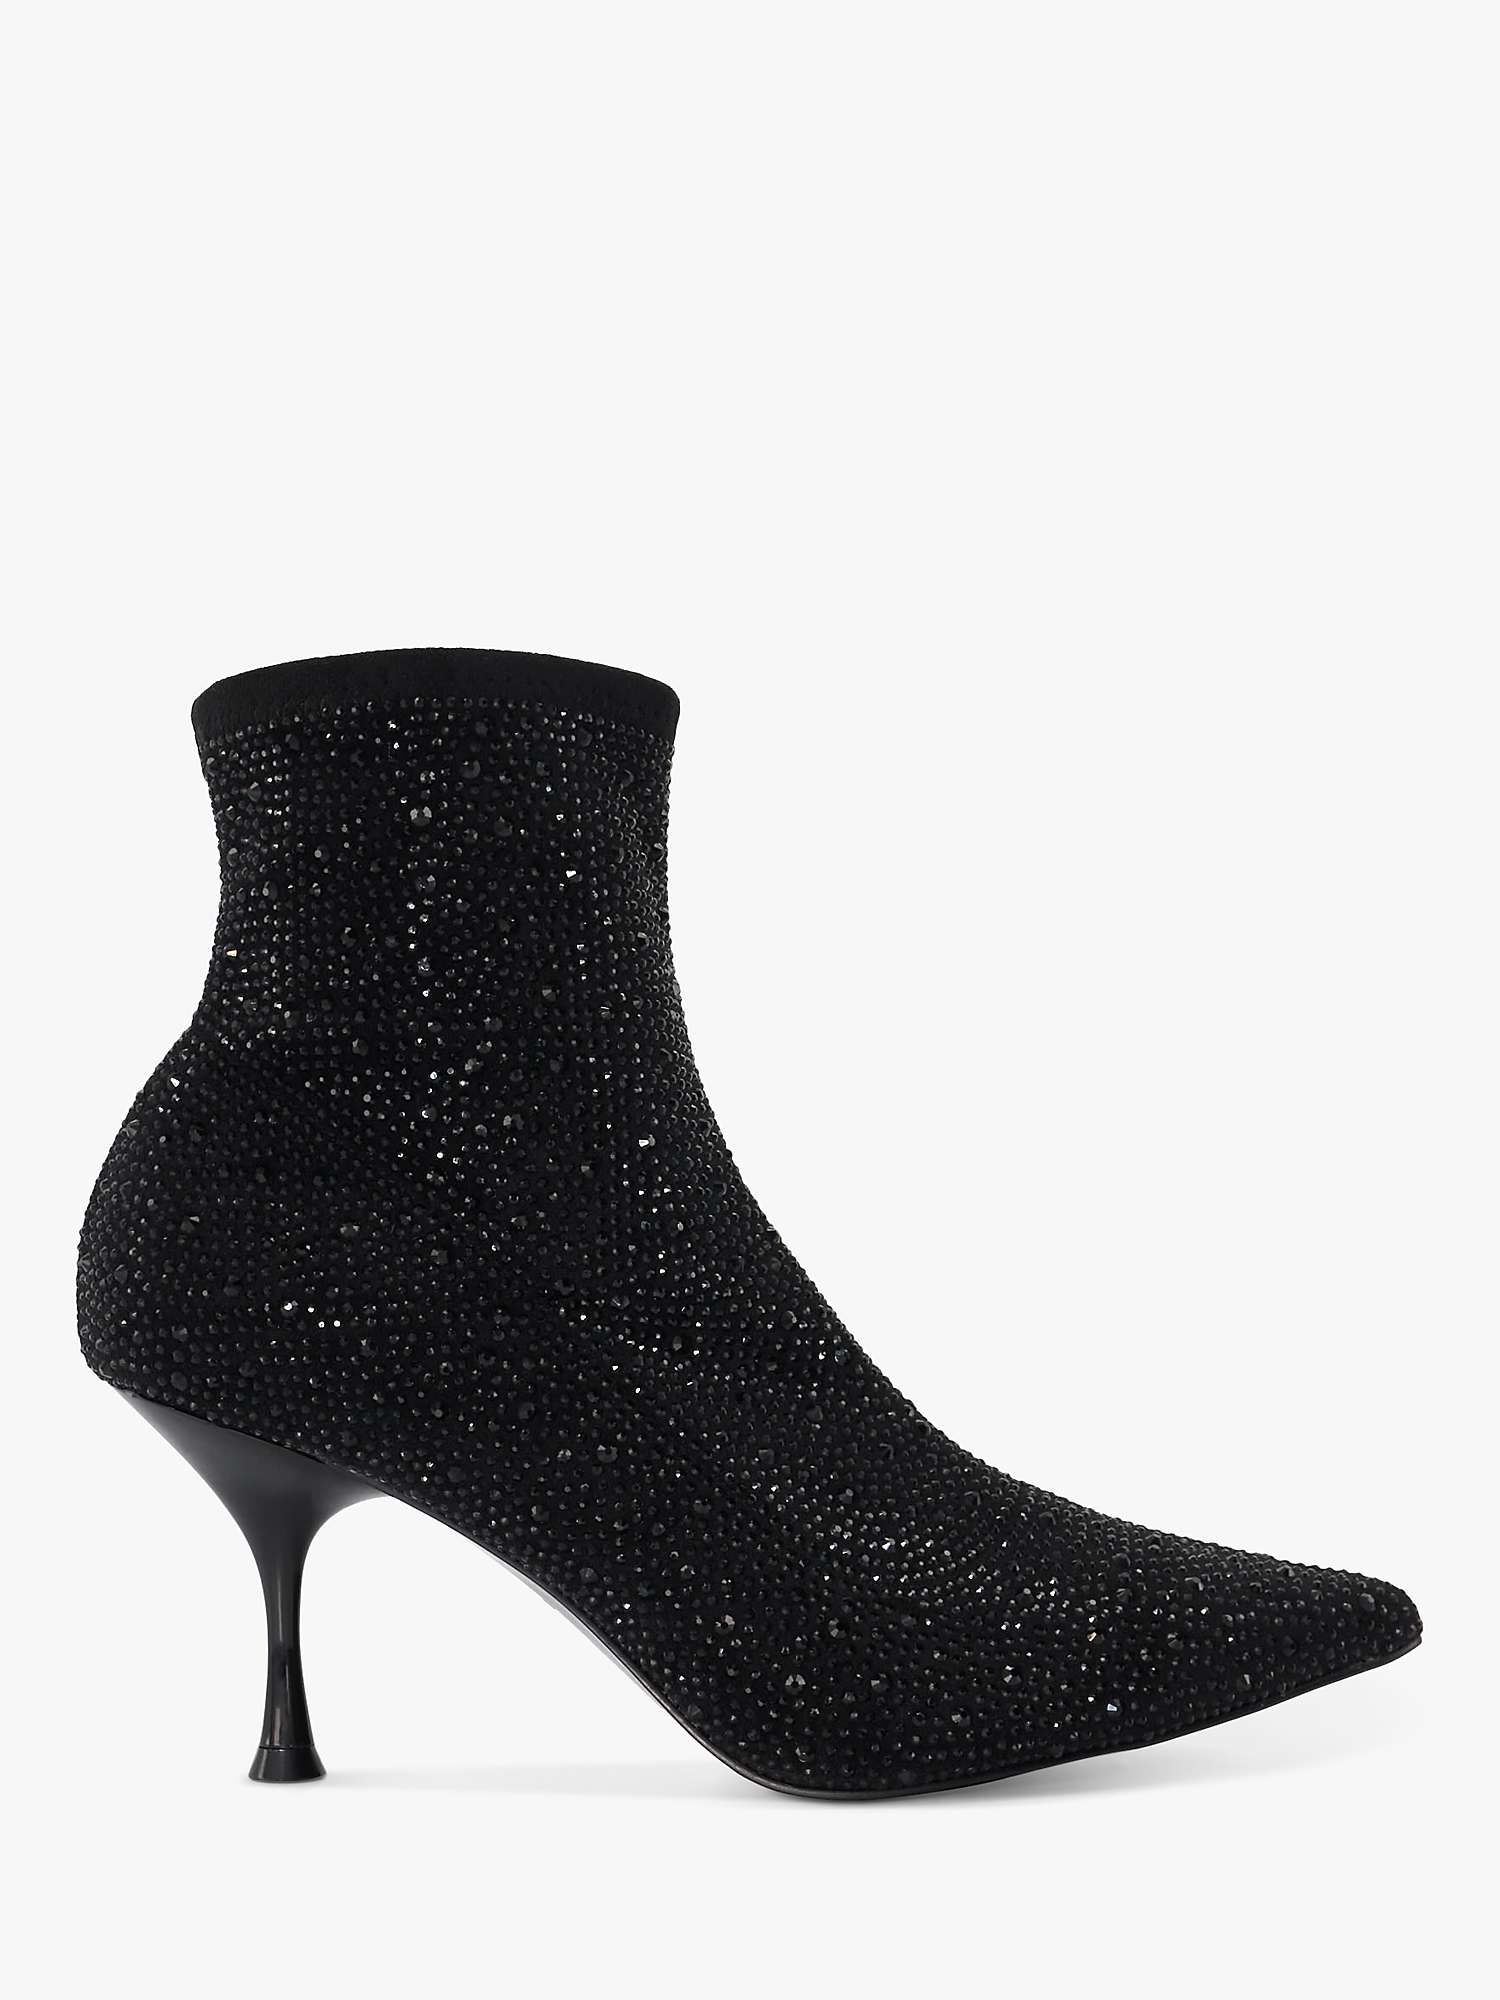 Buy Dune Onslowe Pointed Embellished Ankle Boots, Black Online at johnlewis.com